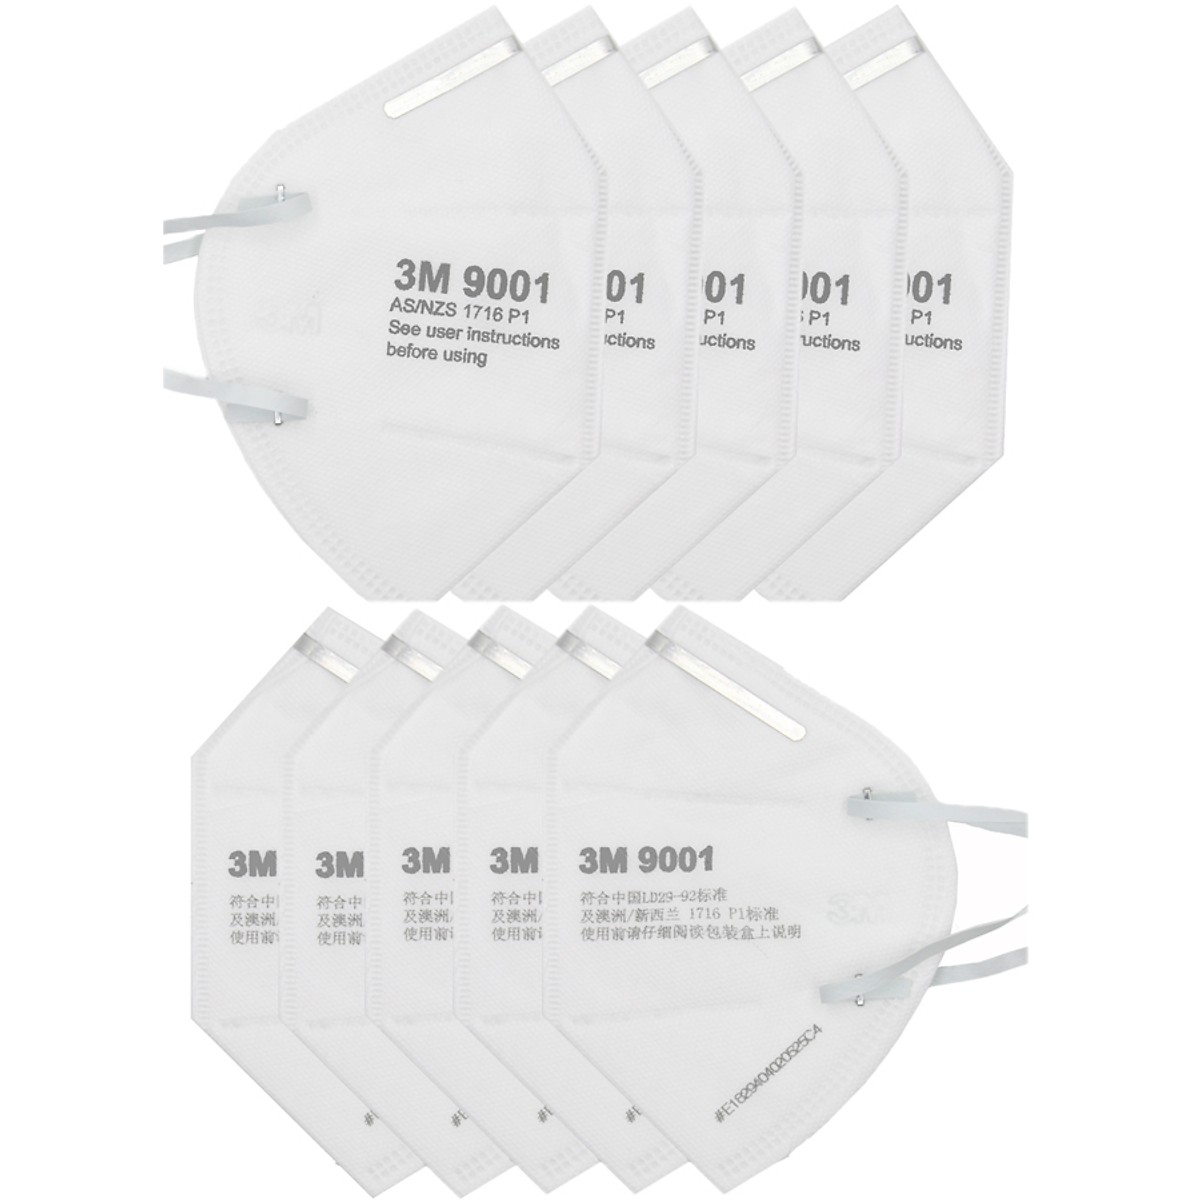 Khẩu trang chống bụi 3M 9001 trắng lọc bụi PM2.5 siêu mịn